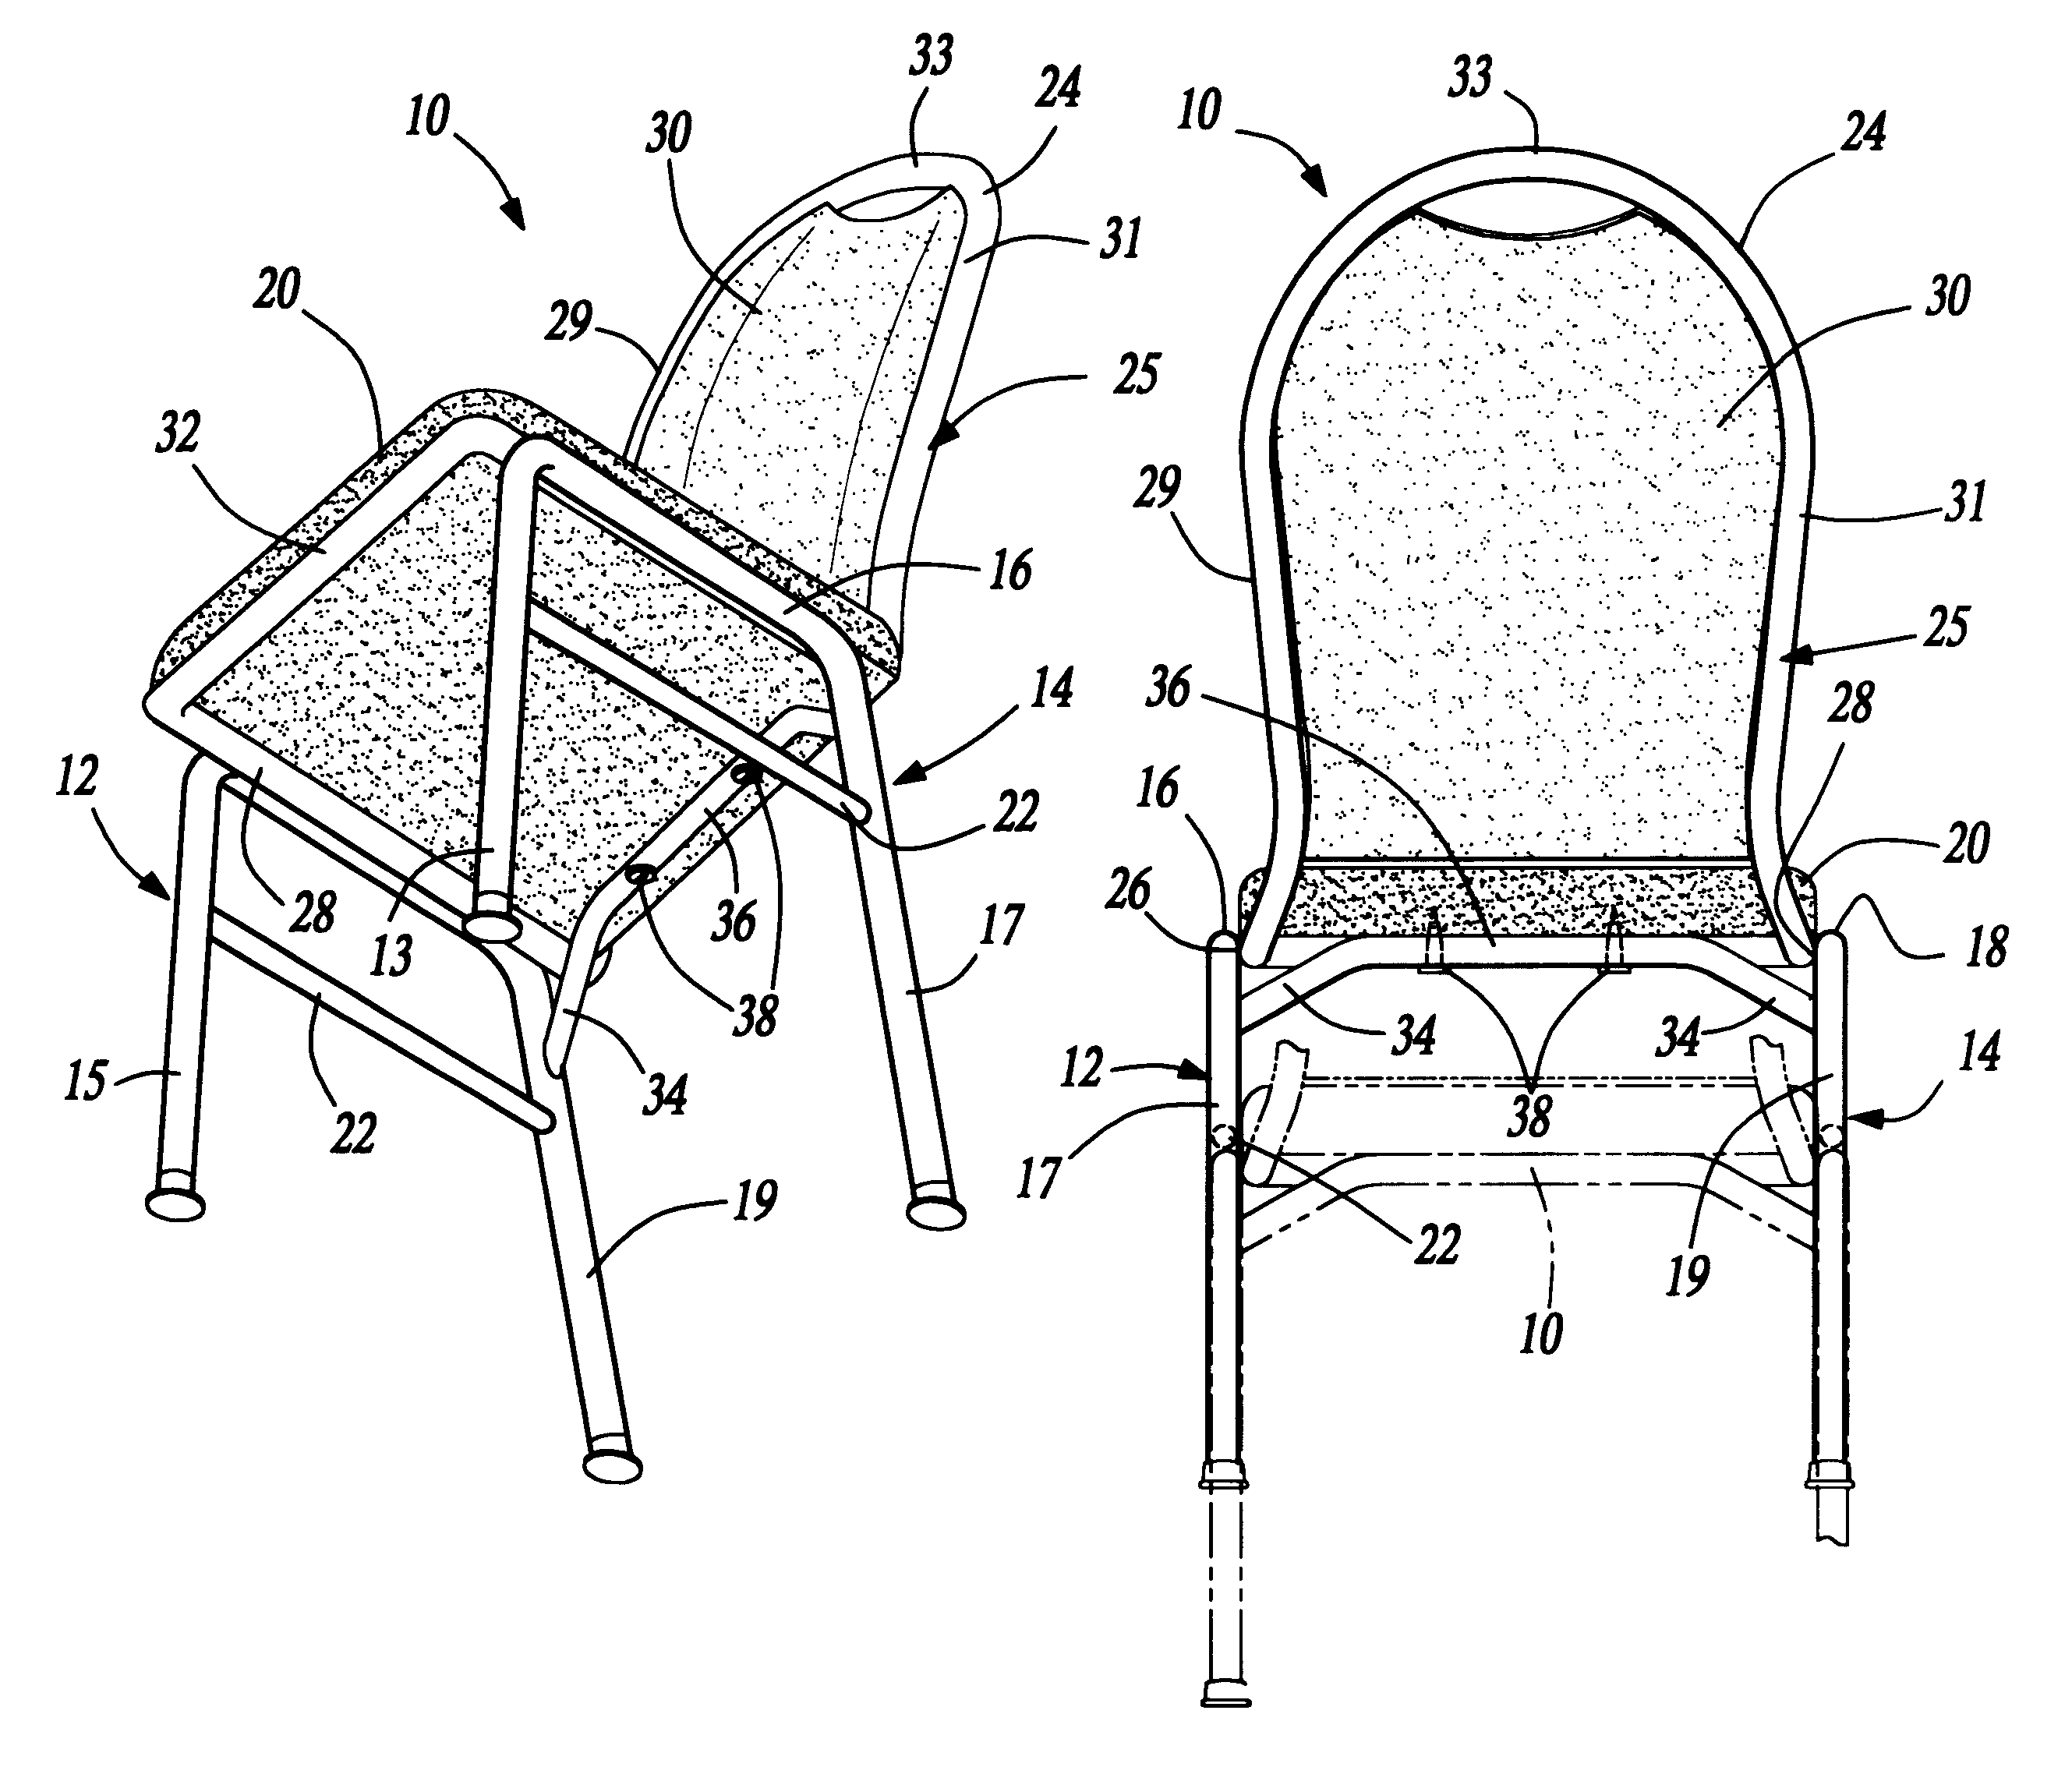 Chair with leg reinforcement bar